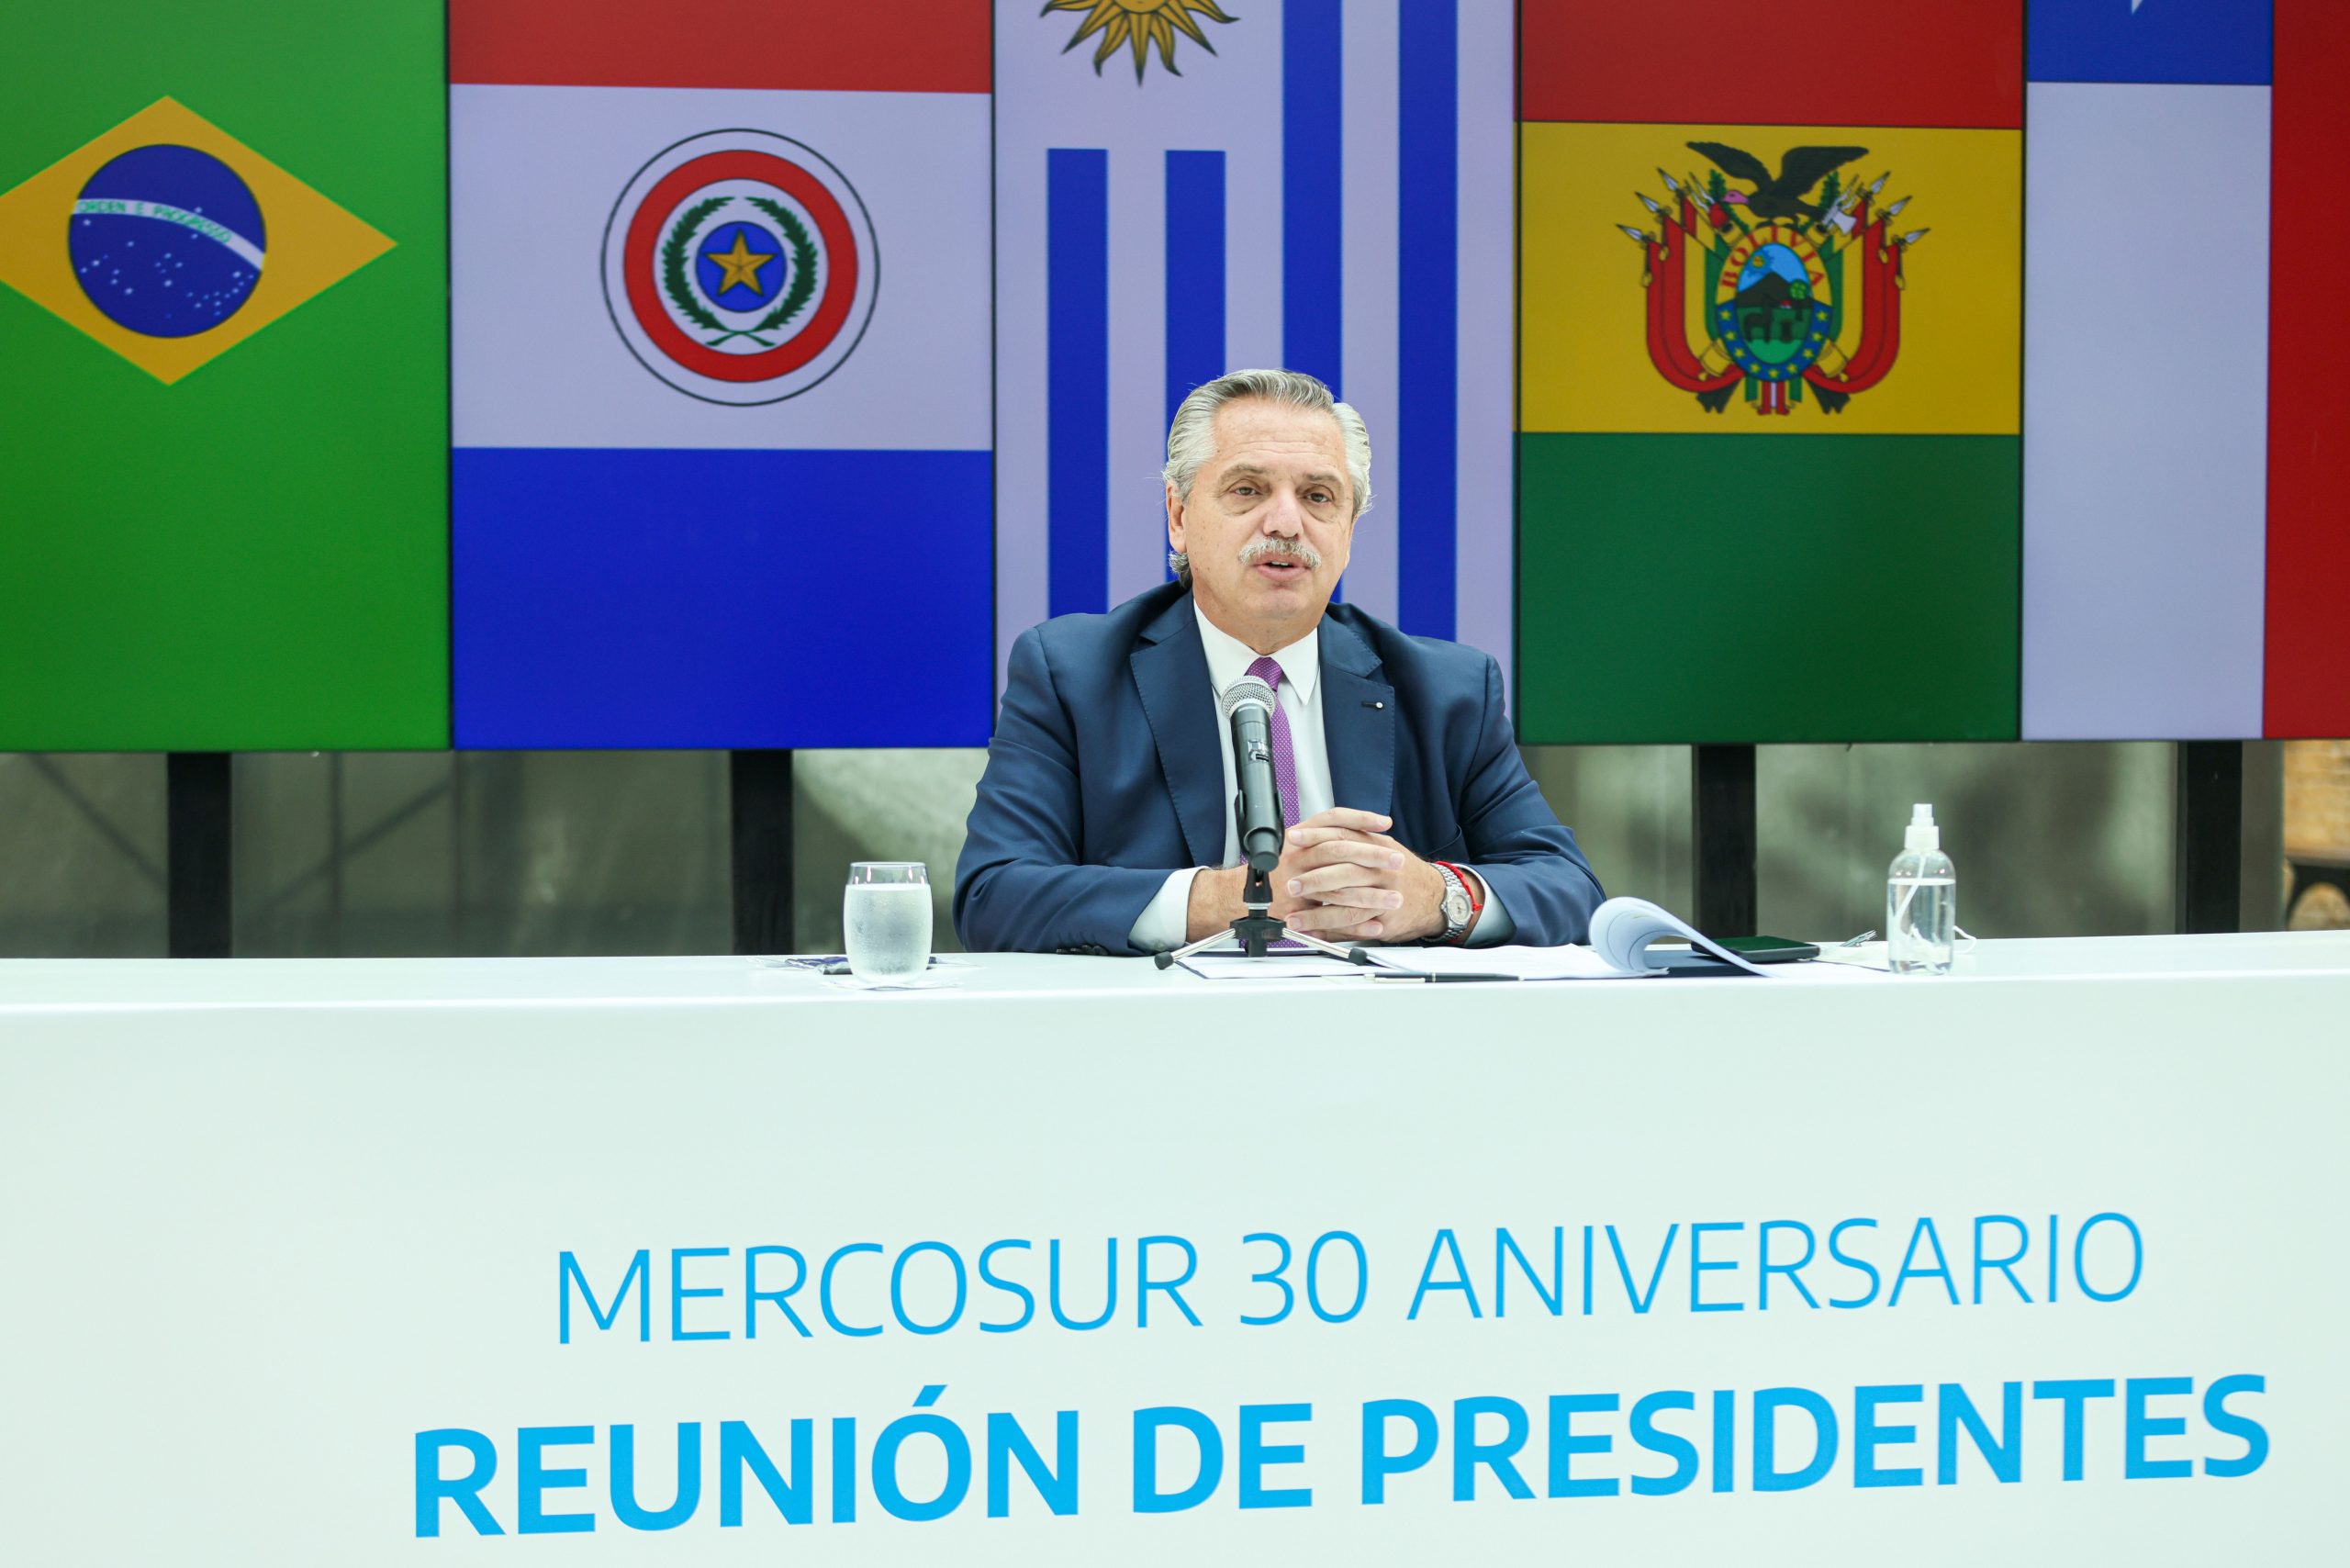 Reunión de presidentes del Mercosur: Alberto Fernández defendió el espíritu del bloque